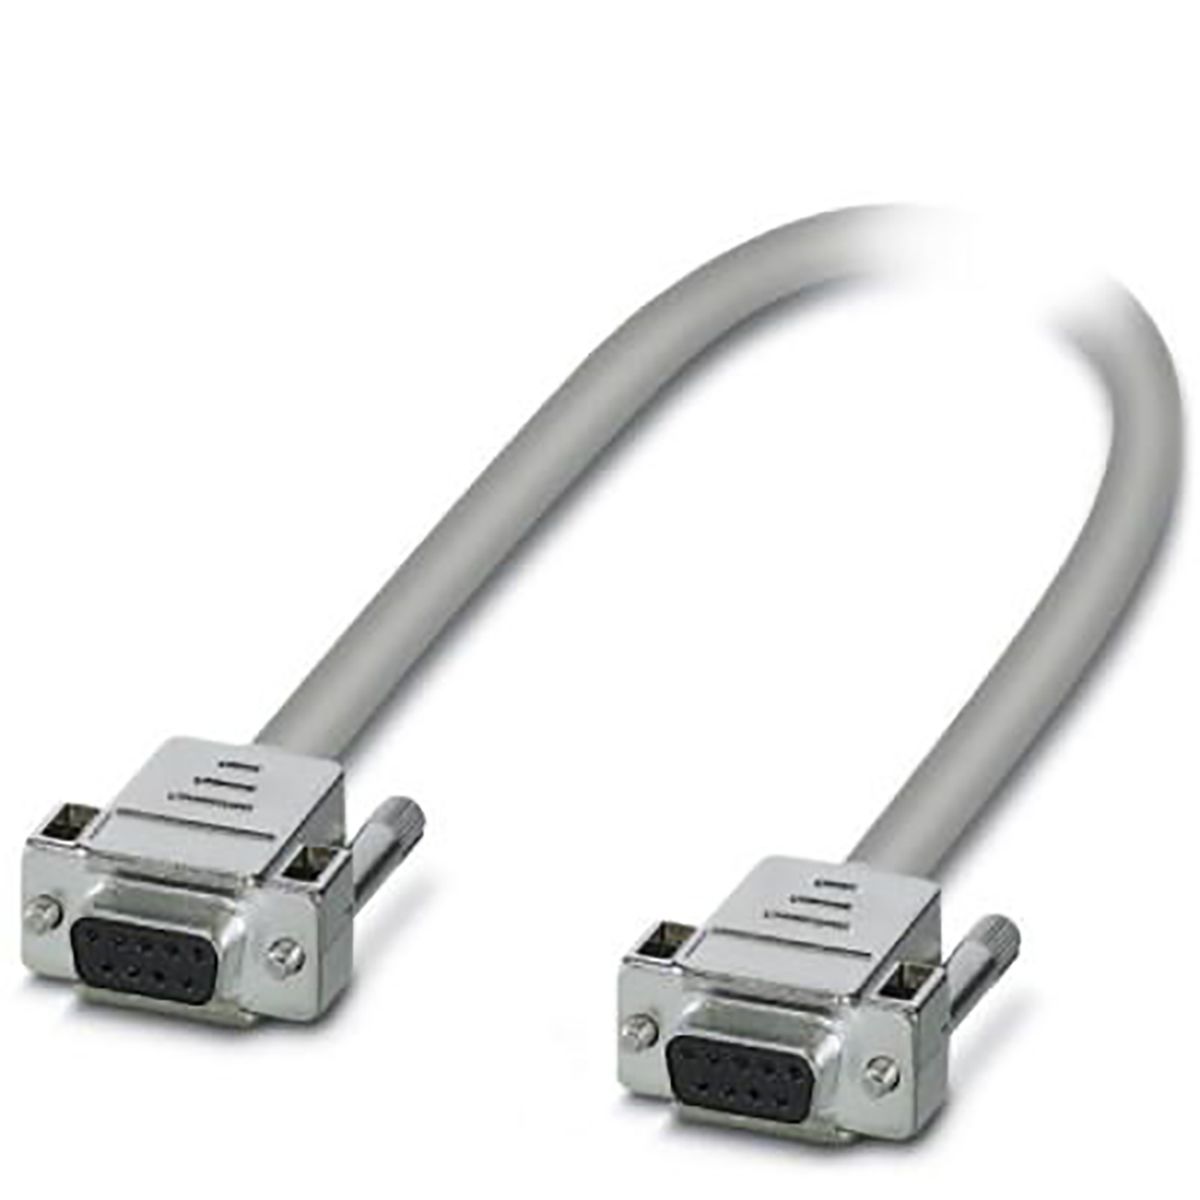 Sériový kabel délka 2m, A: 9 kolík D-SUB, B: 9 kolík D-SUB